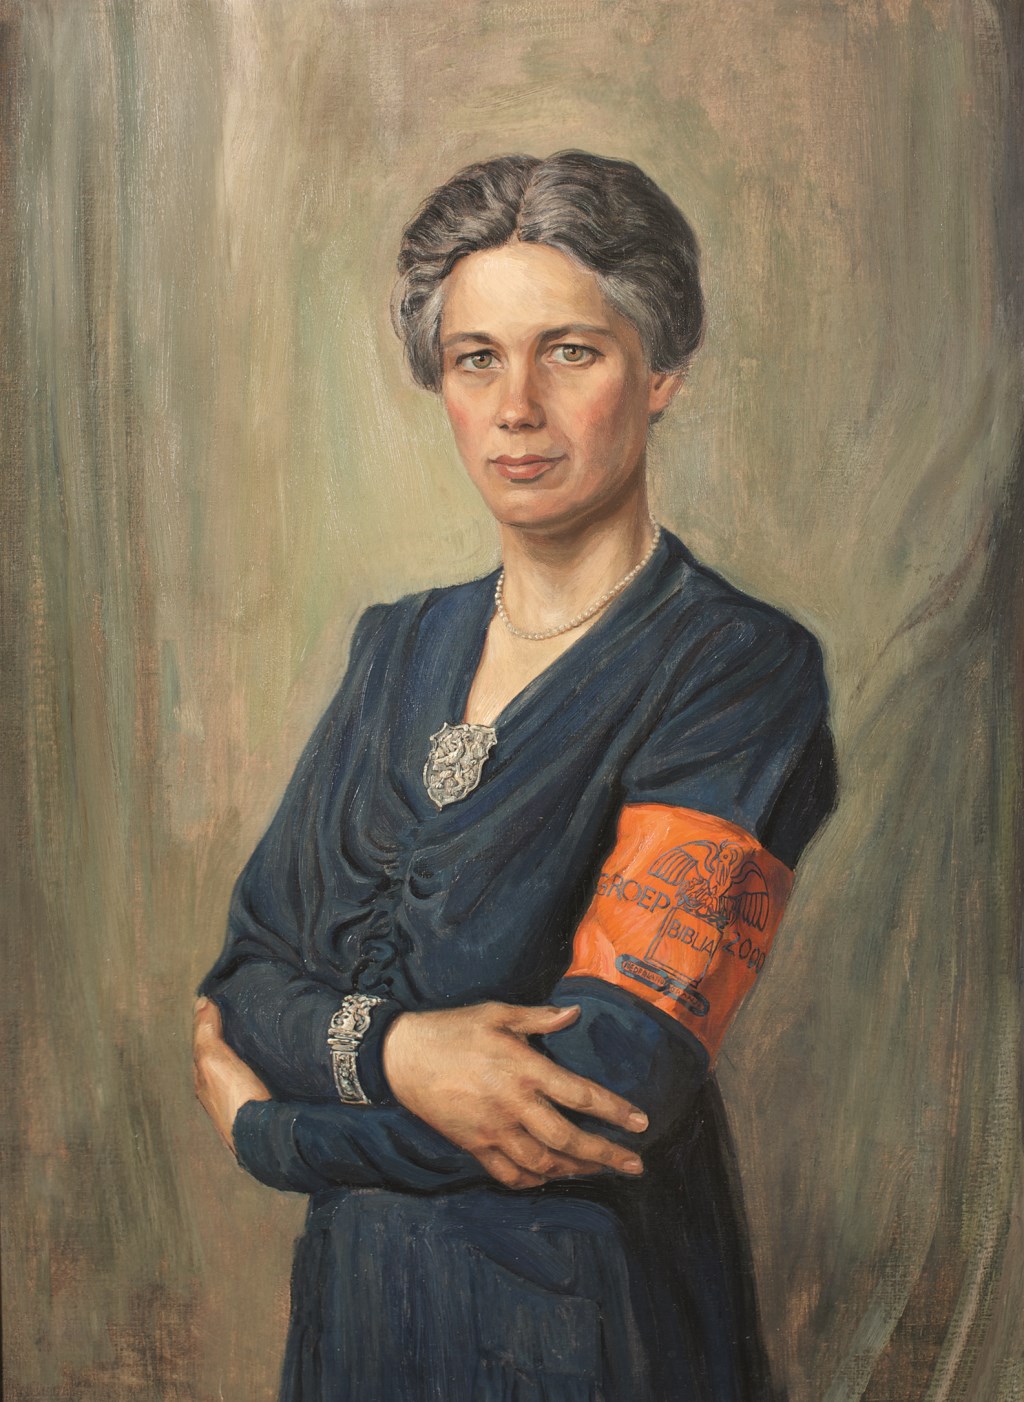 Jacoba van Tongeren was een sterke vrouw uit de Tweede Wereldoorlog die, met een onvoorstelbare moed en uithoudingsvermogen, een vitale rol speelde in het Amsterdamse verzet. 